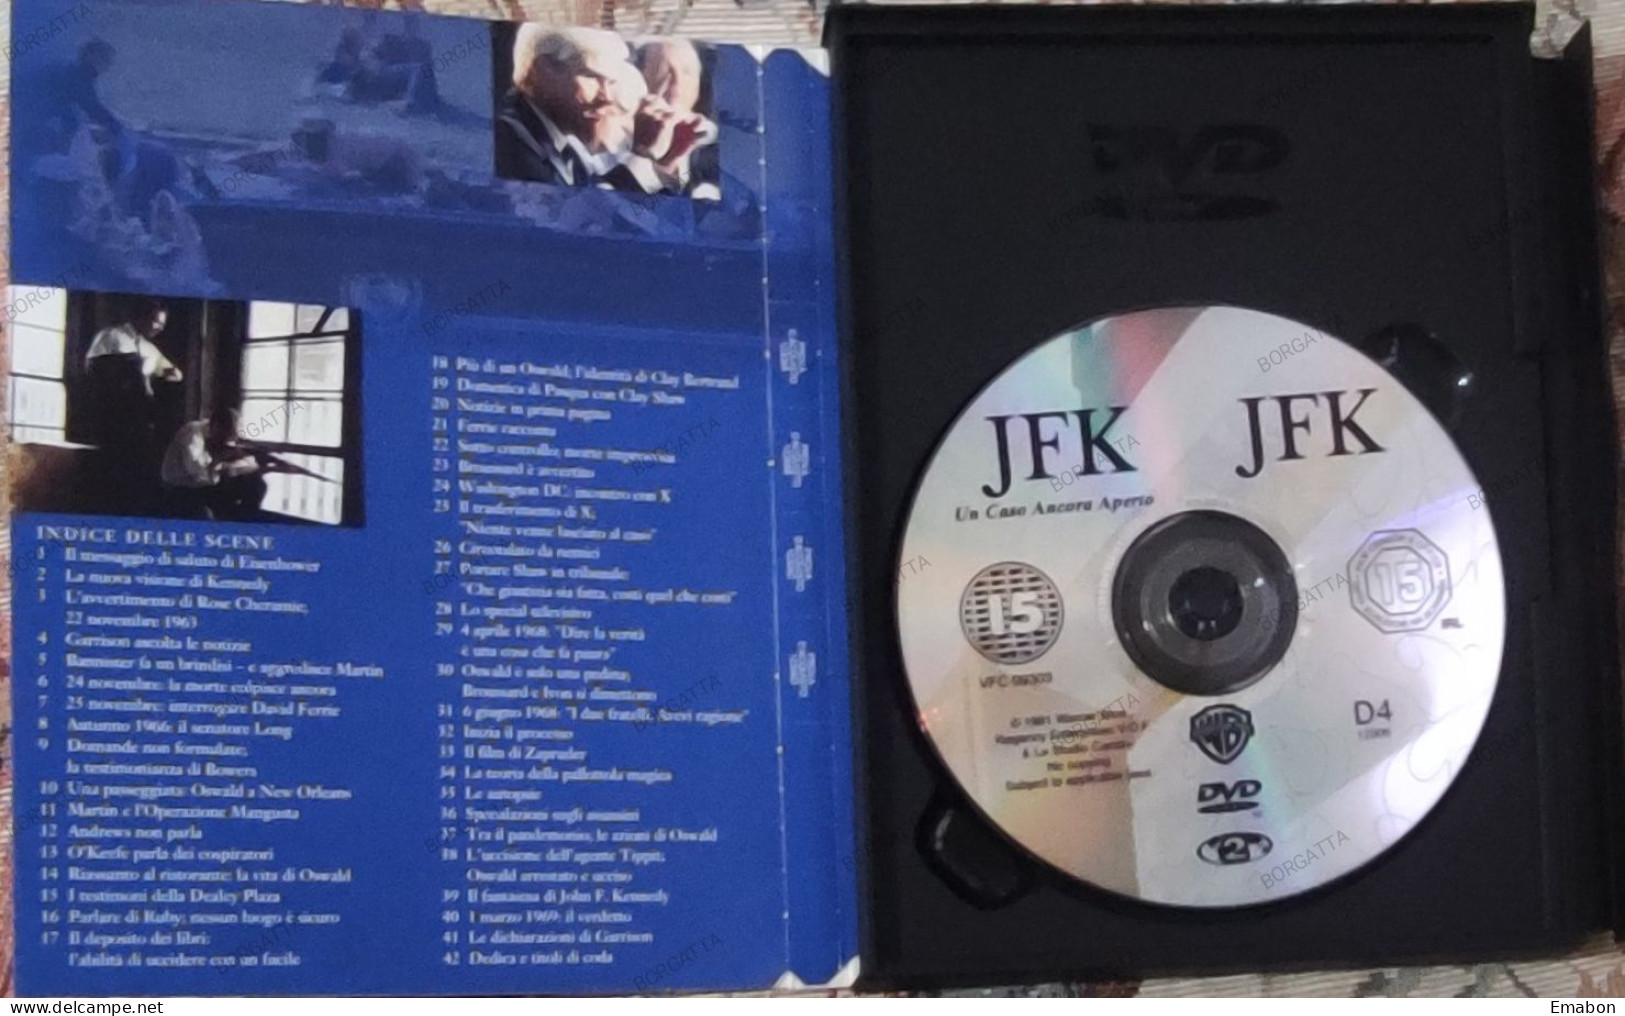 BORGATTA - DRAMMA - Dvd  " JFK UN CASO ANCORA APERTO " KEVIN KOSTNER - PAL 2 - WARNER  1999-  USATO In Buono Stato - Drame